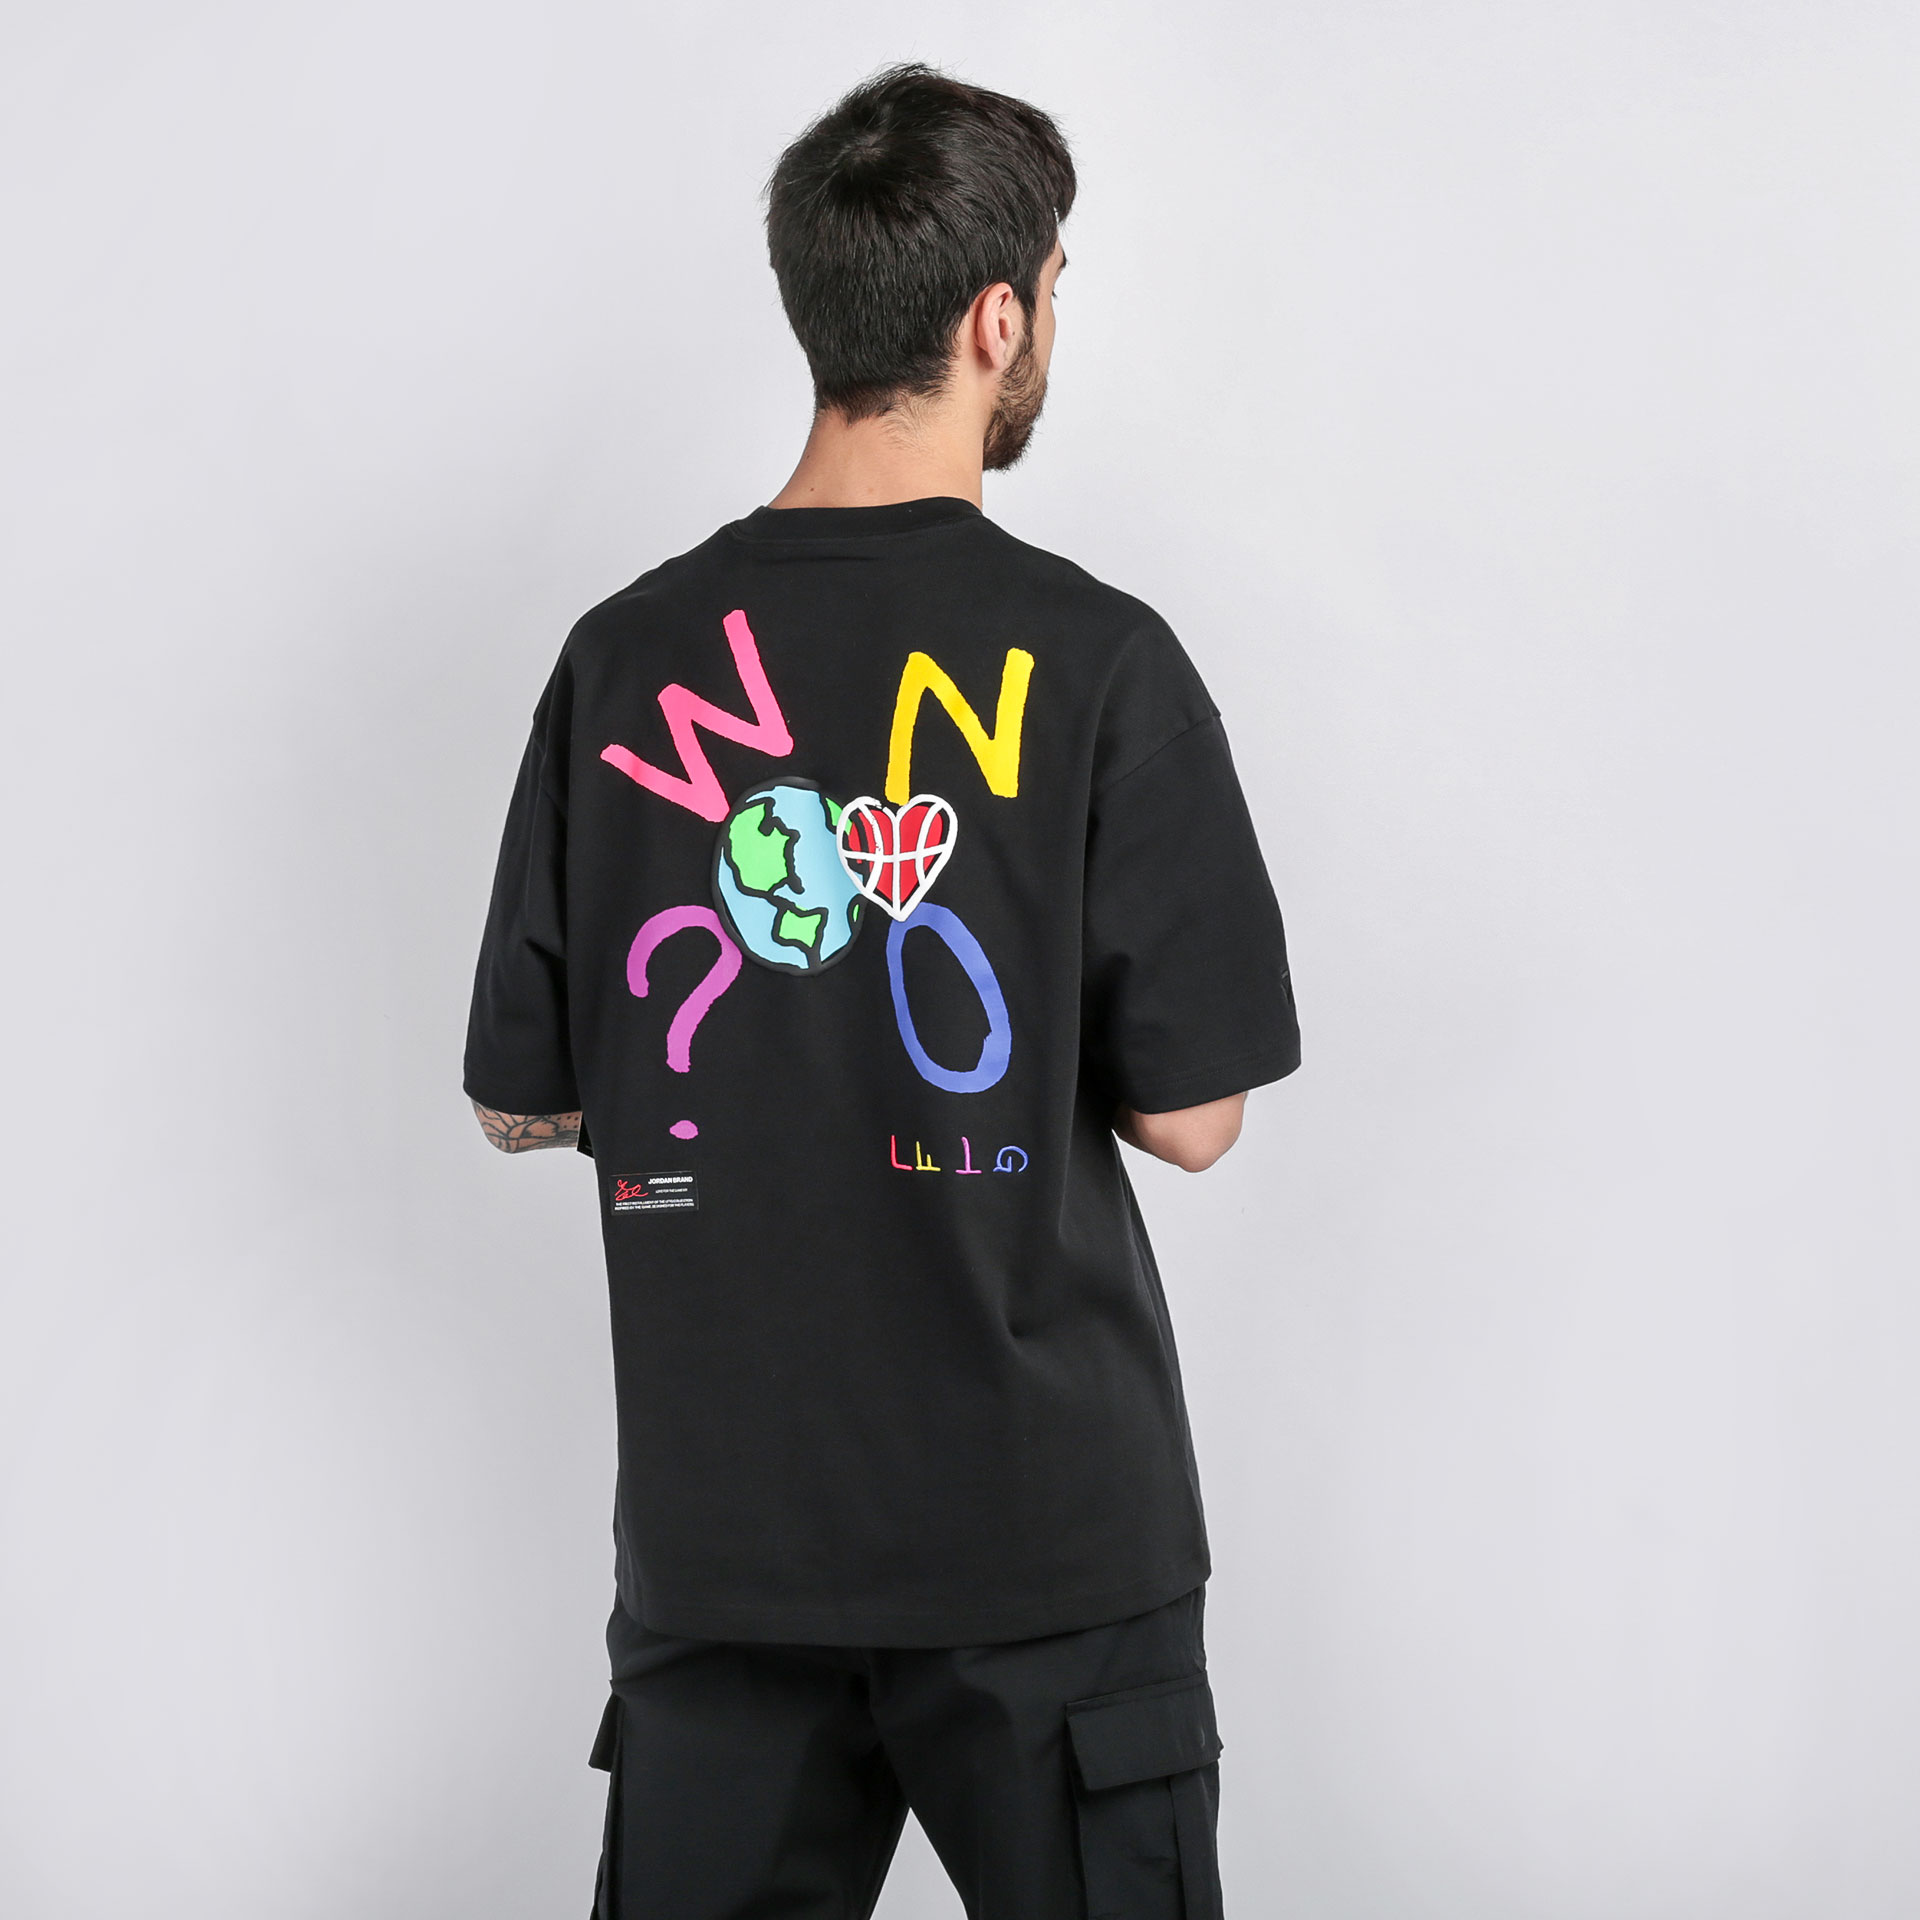 мужская черная футболка Jordan T-shirt  Why Not? CW4257-011 - цена, описание, фото 1